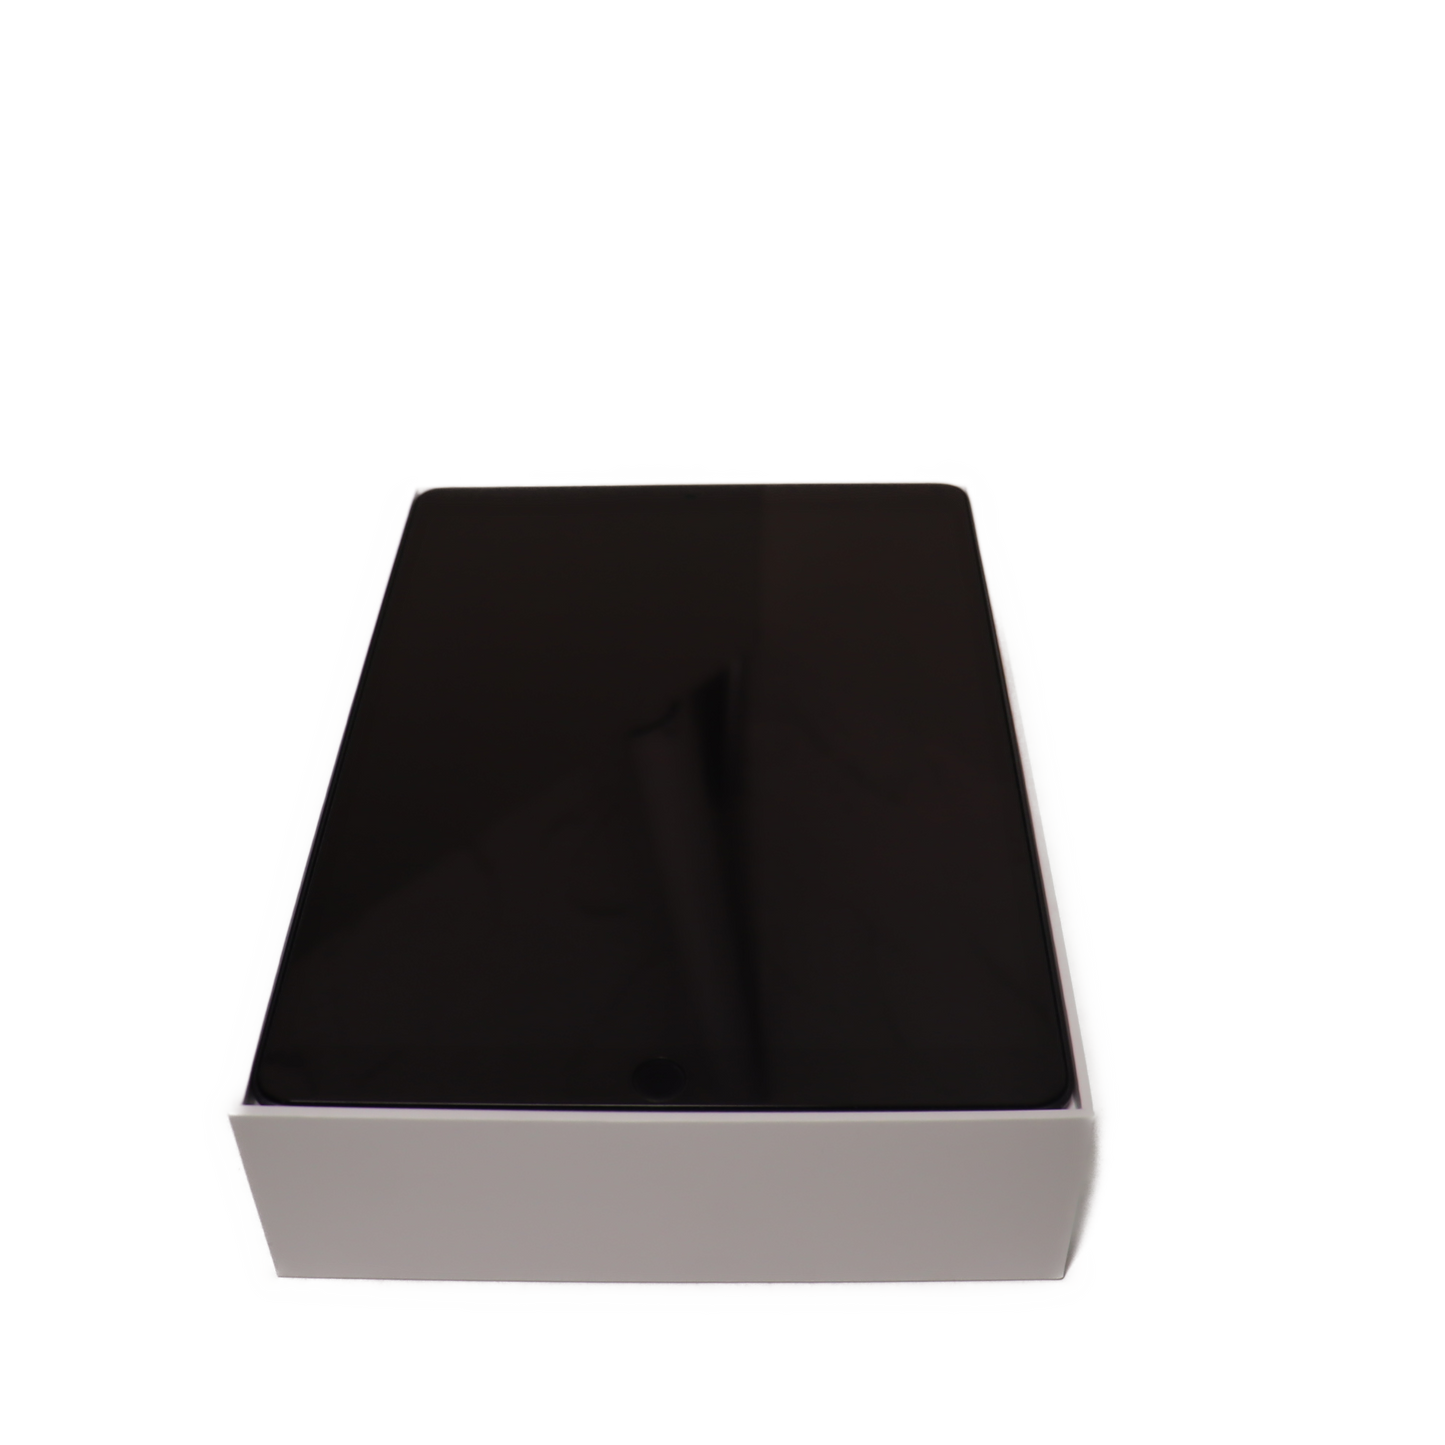 Apple iPad Air (2019) 256GB WiFi + 4G LTE Space Grau